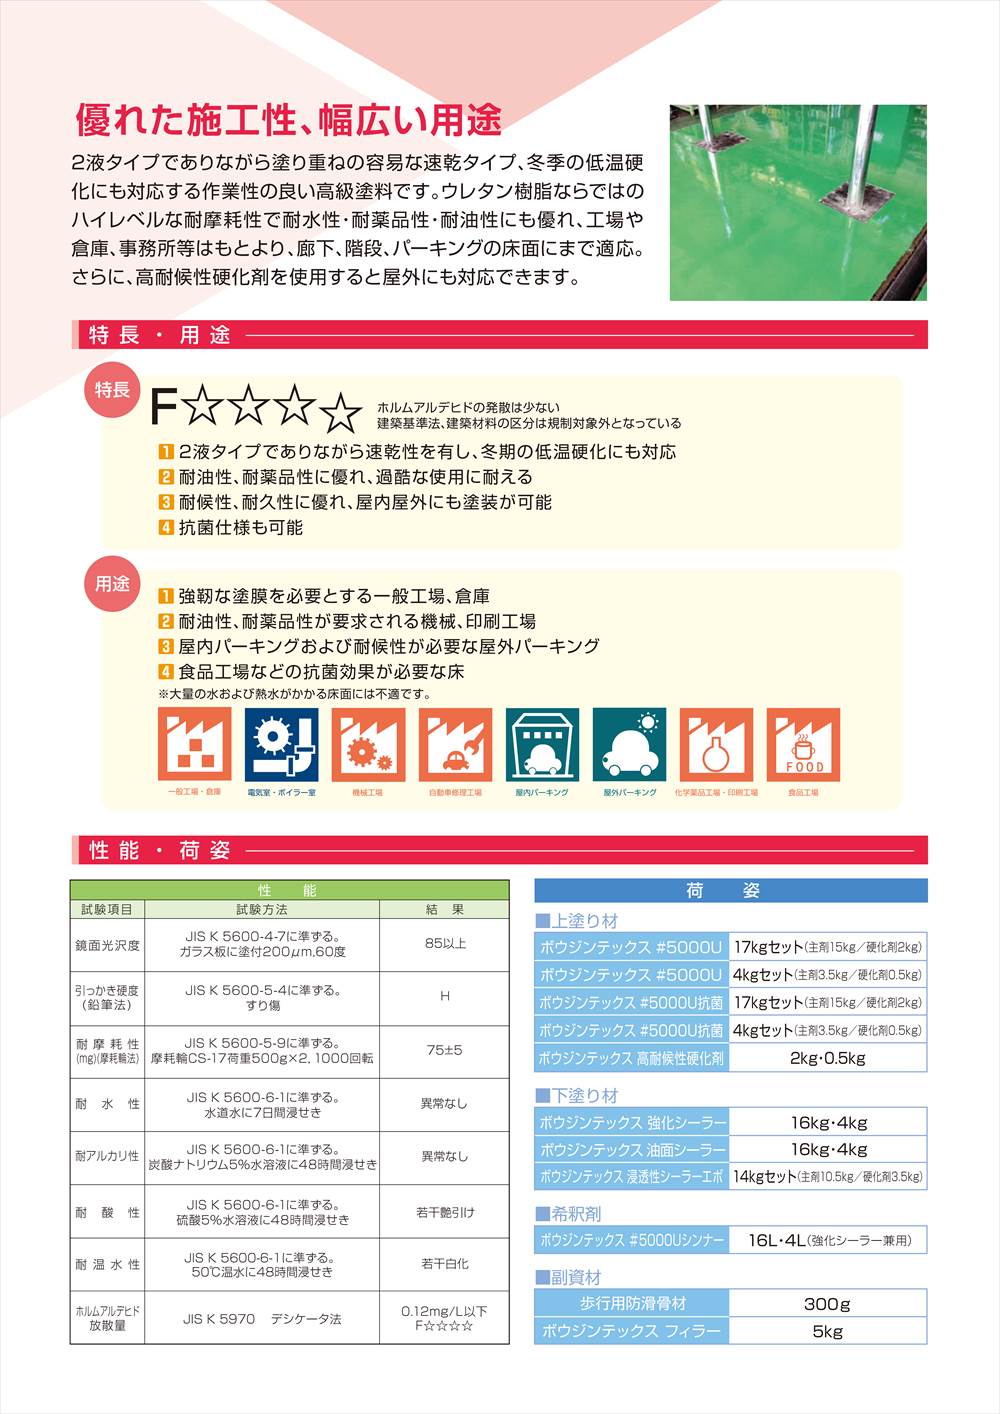 ボウジンテックス#5000U 高耐候性 赤 4kgセット【メーカー直送便/代引